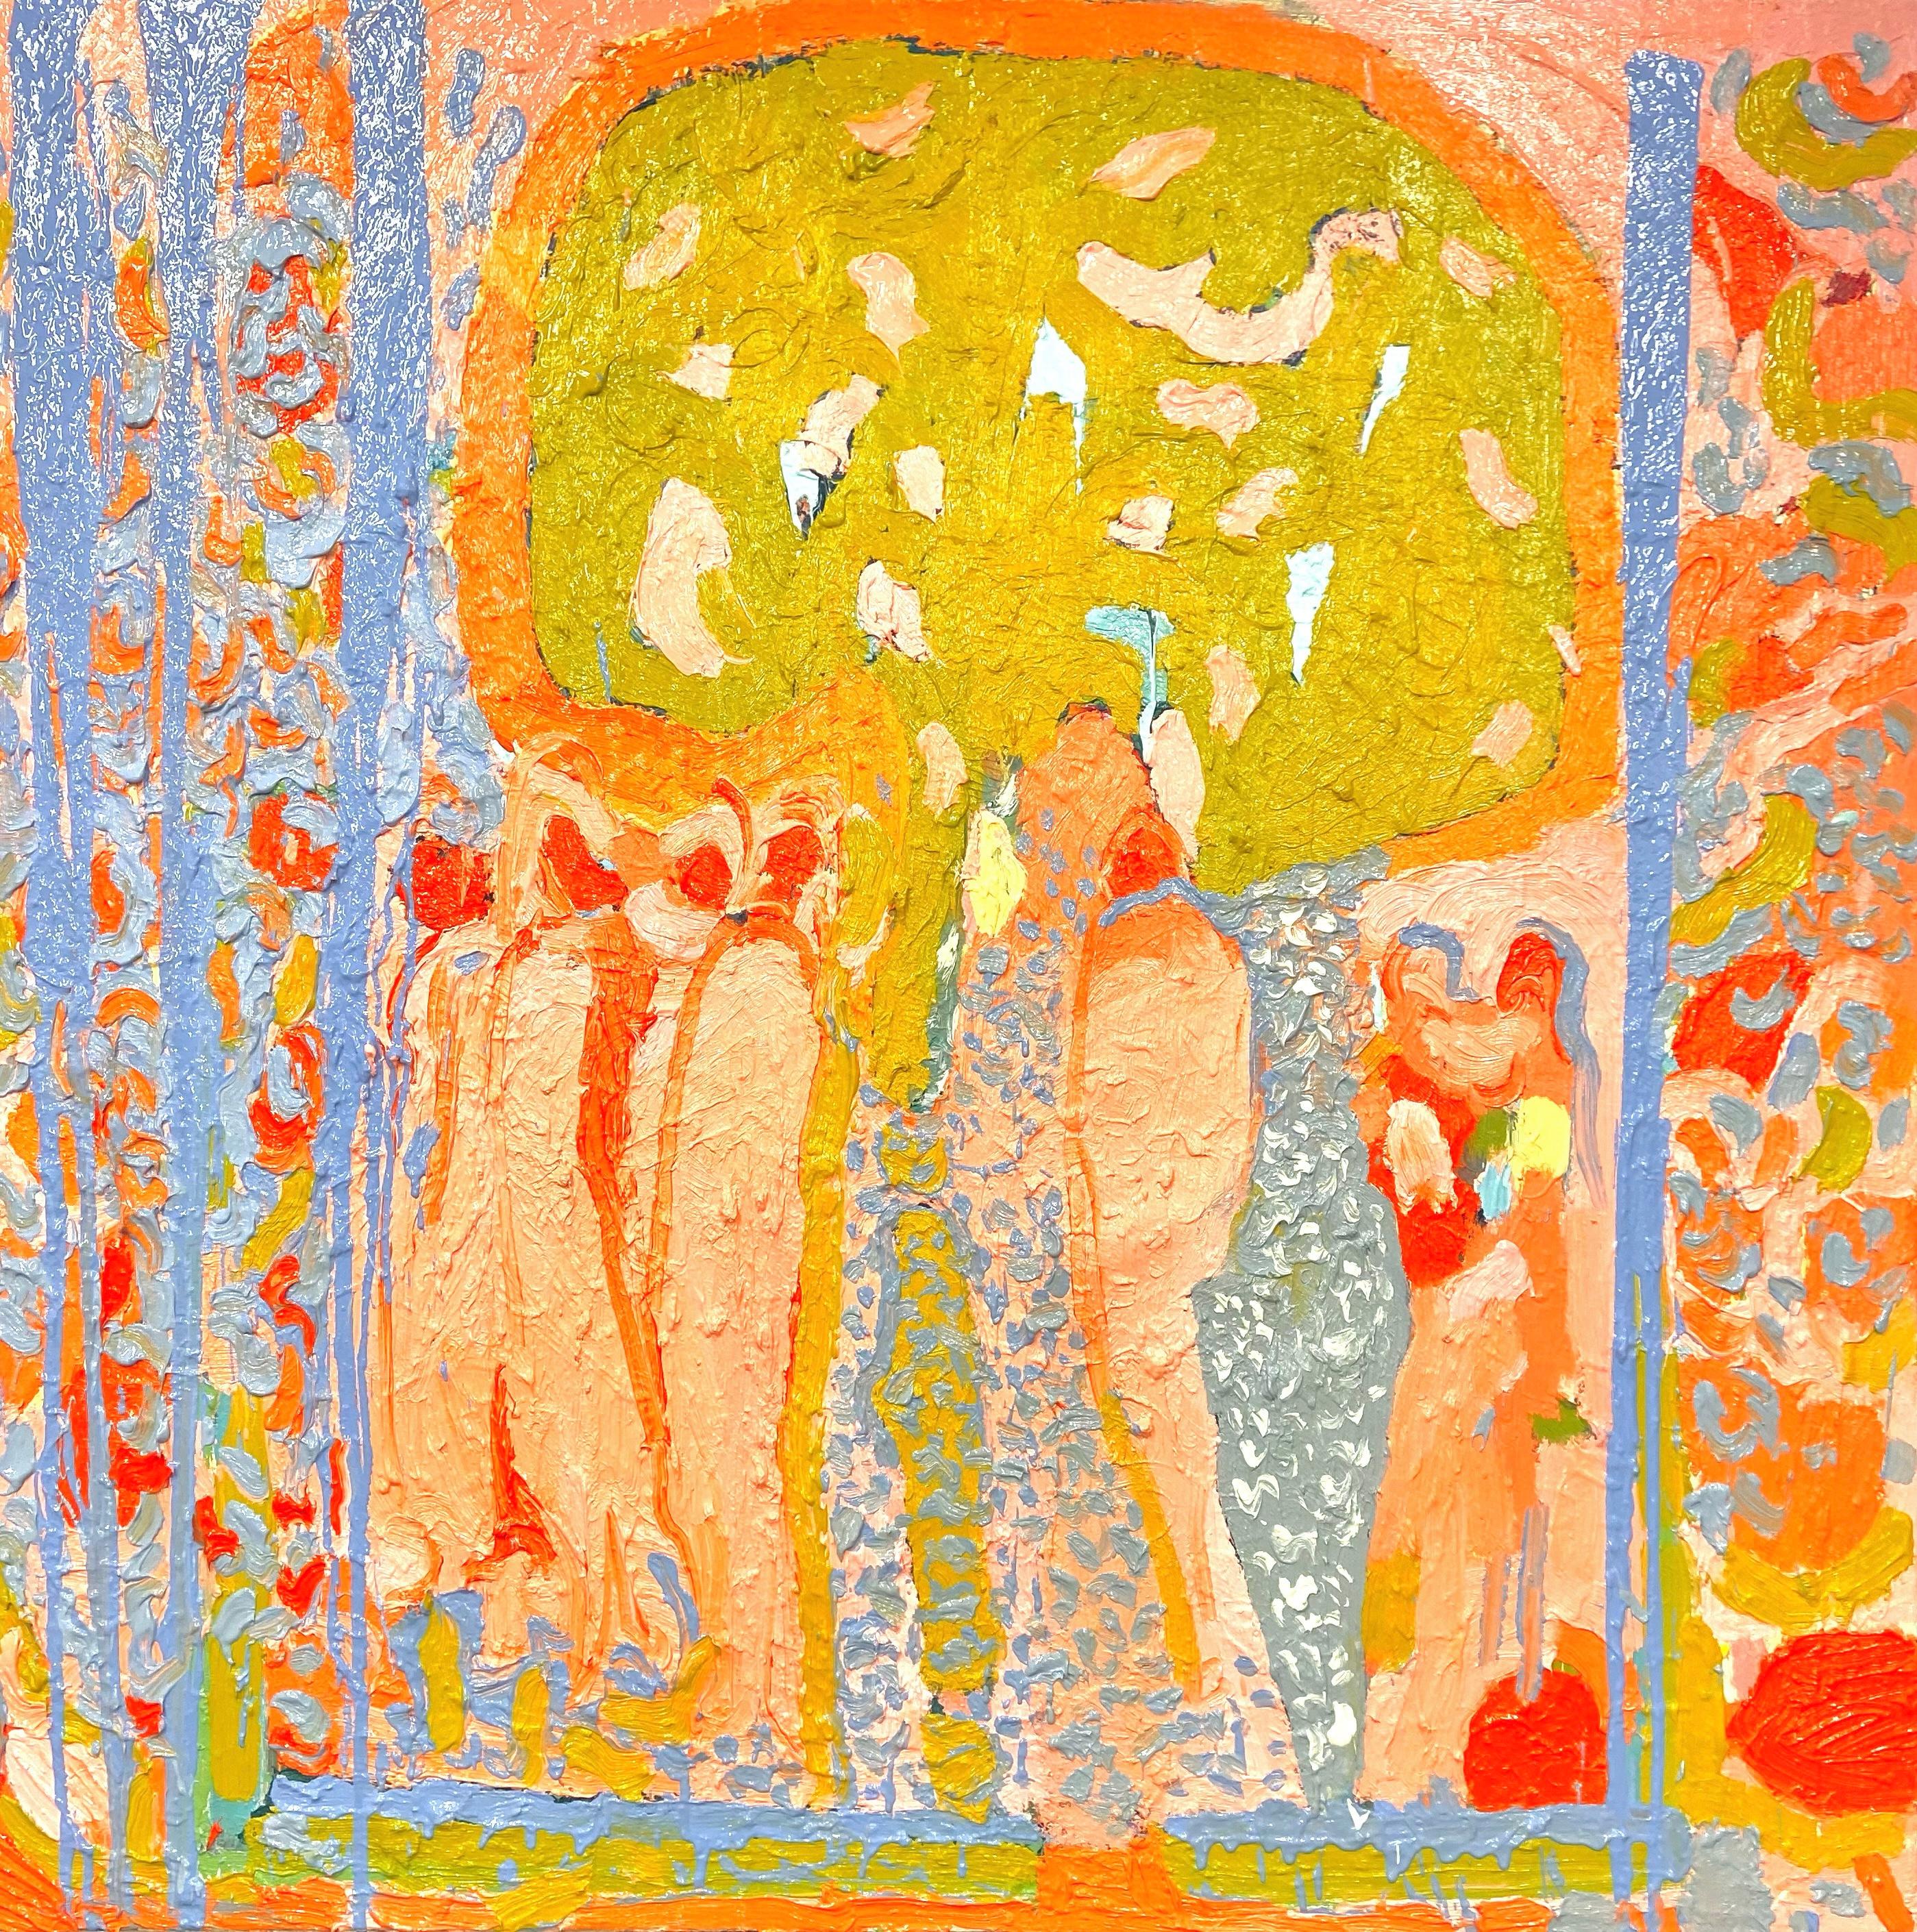 Abstract Painting Paul wadsworth - Sous un arbre de banyan : grande peinture à l'huile expressionniste abstraite